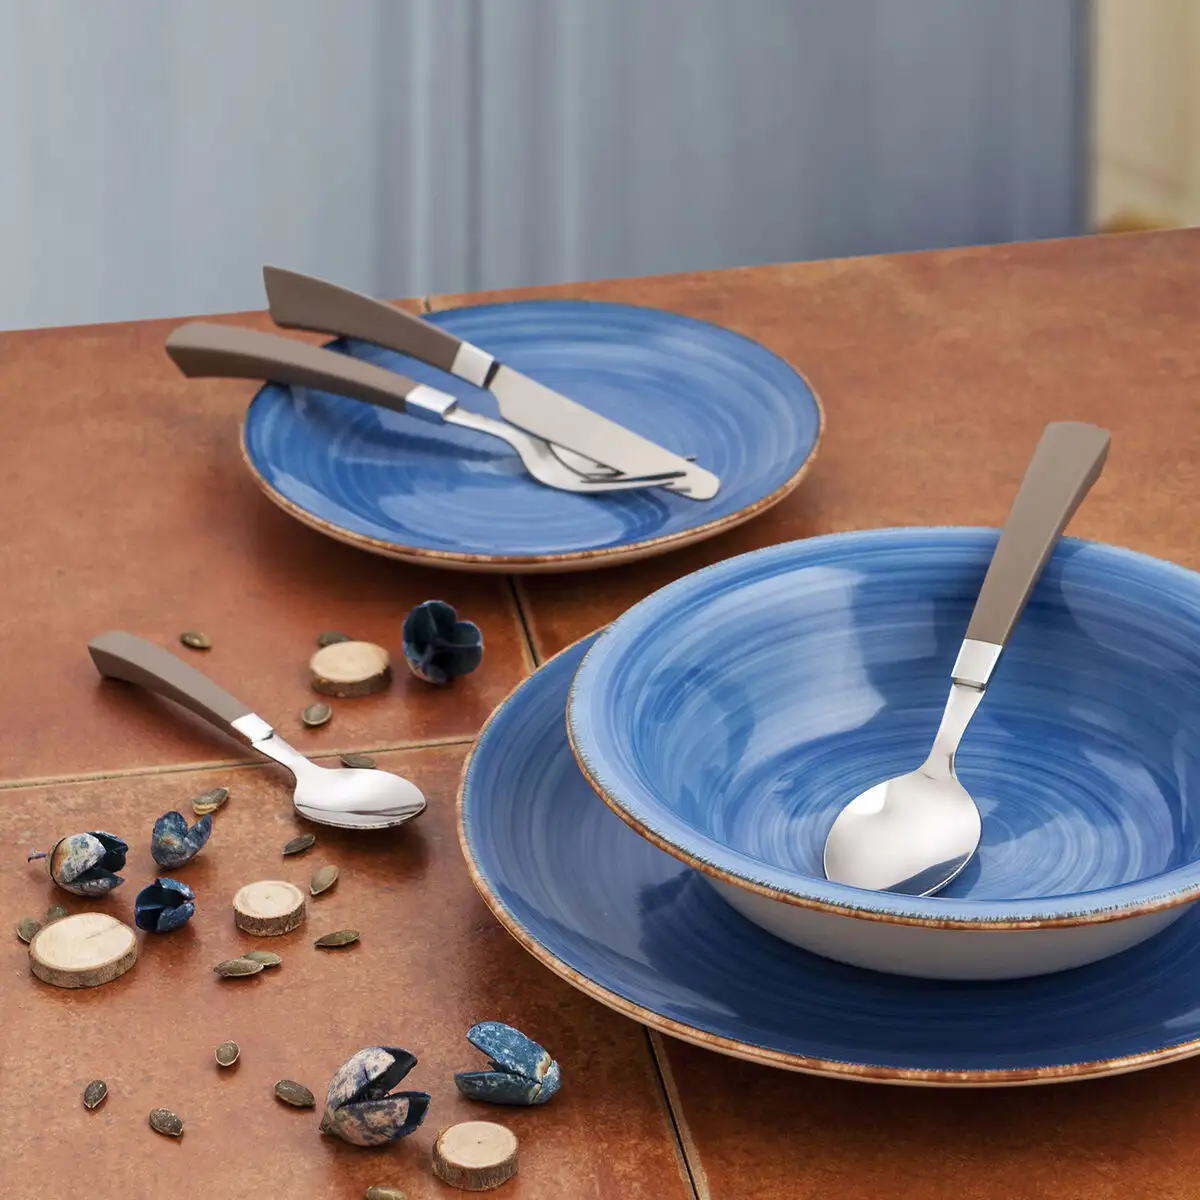 Assiette creuse bleu en céramique